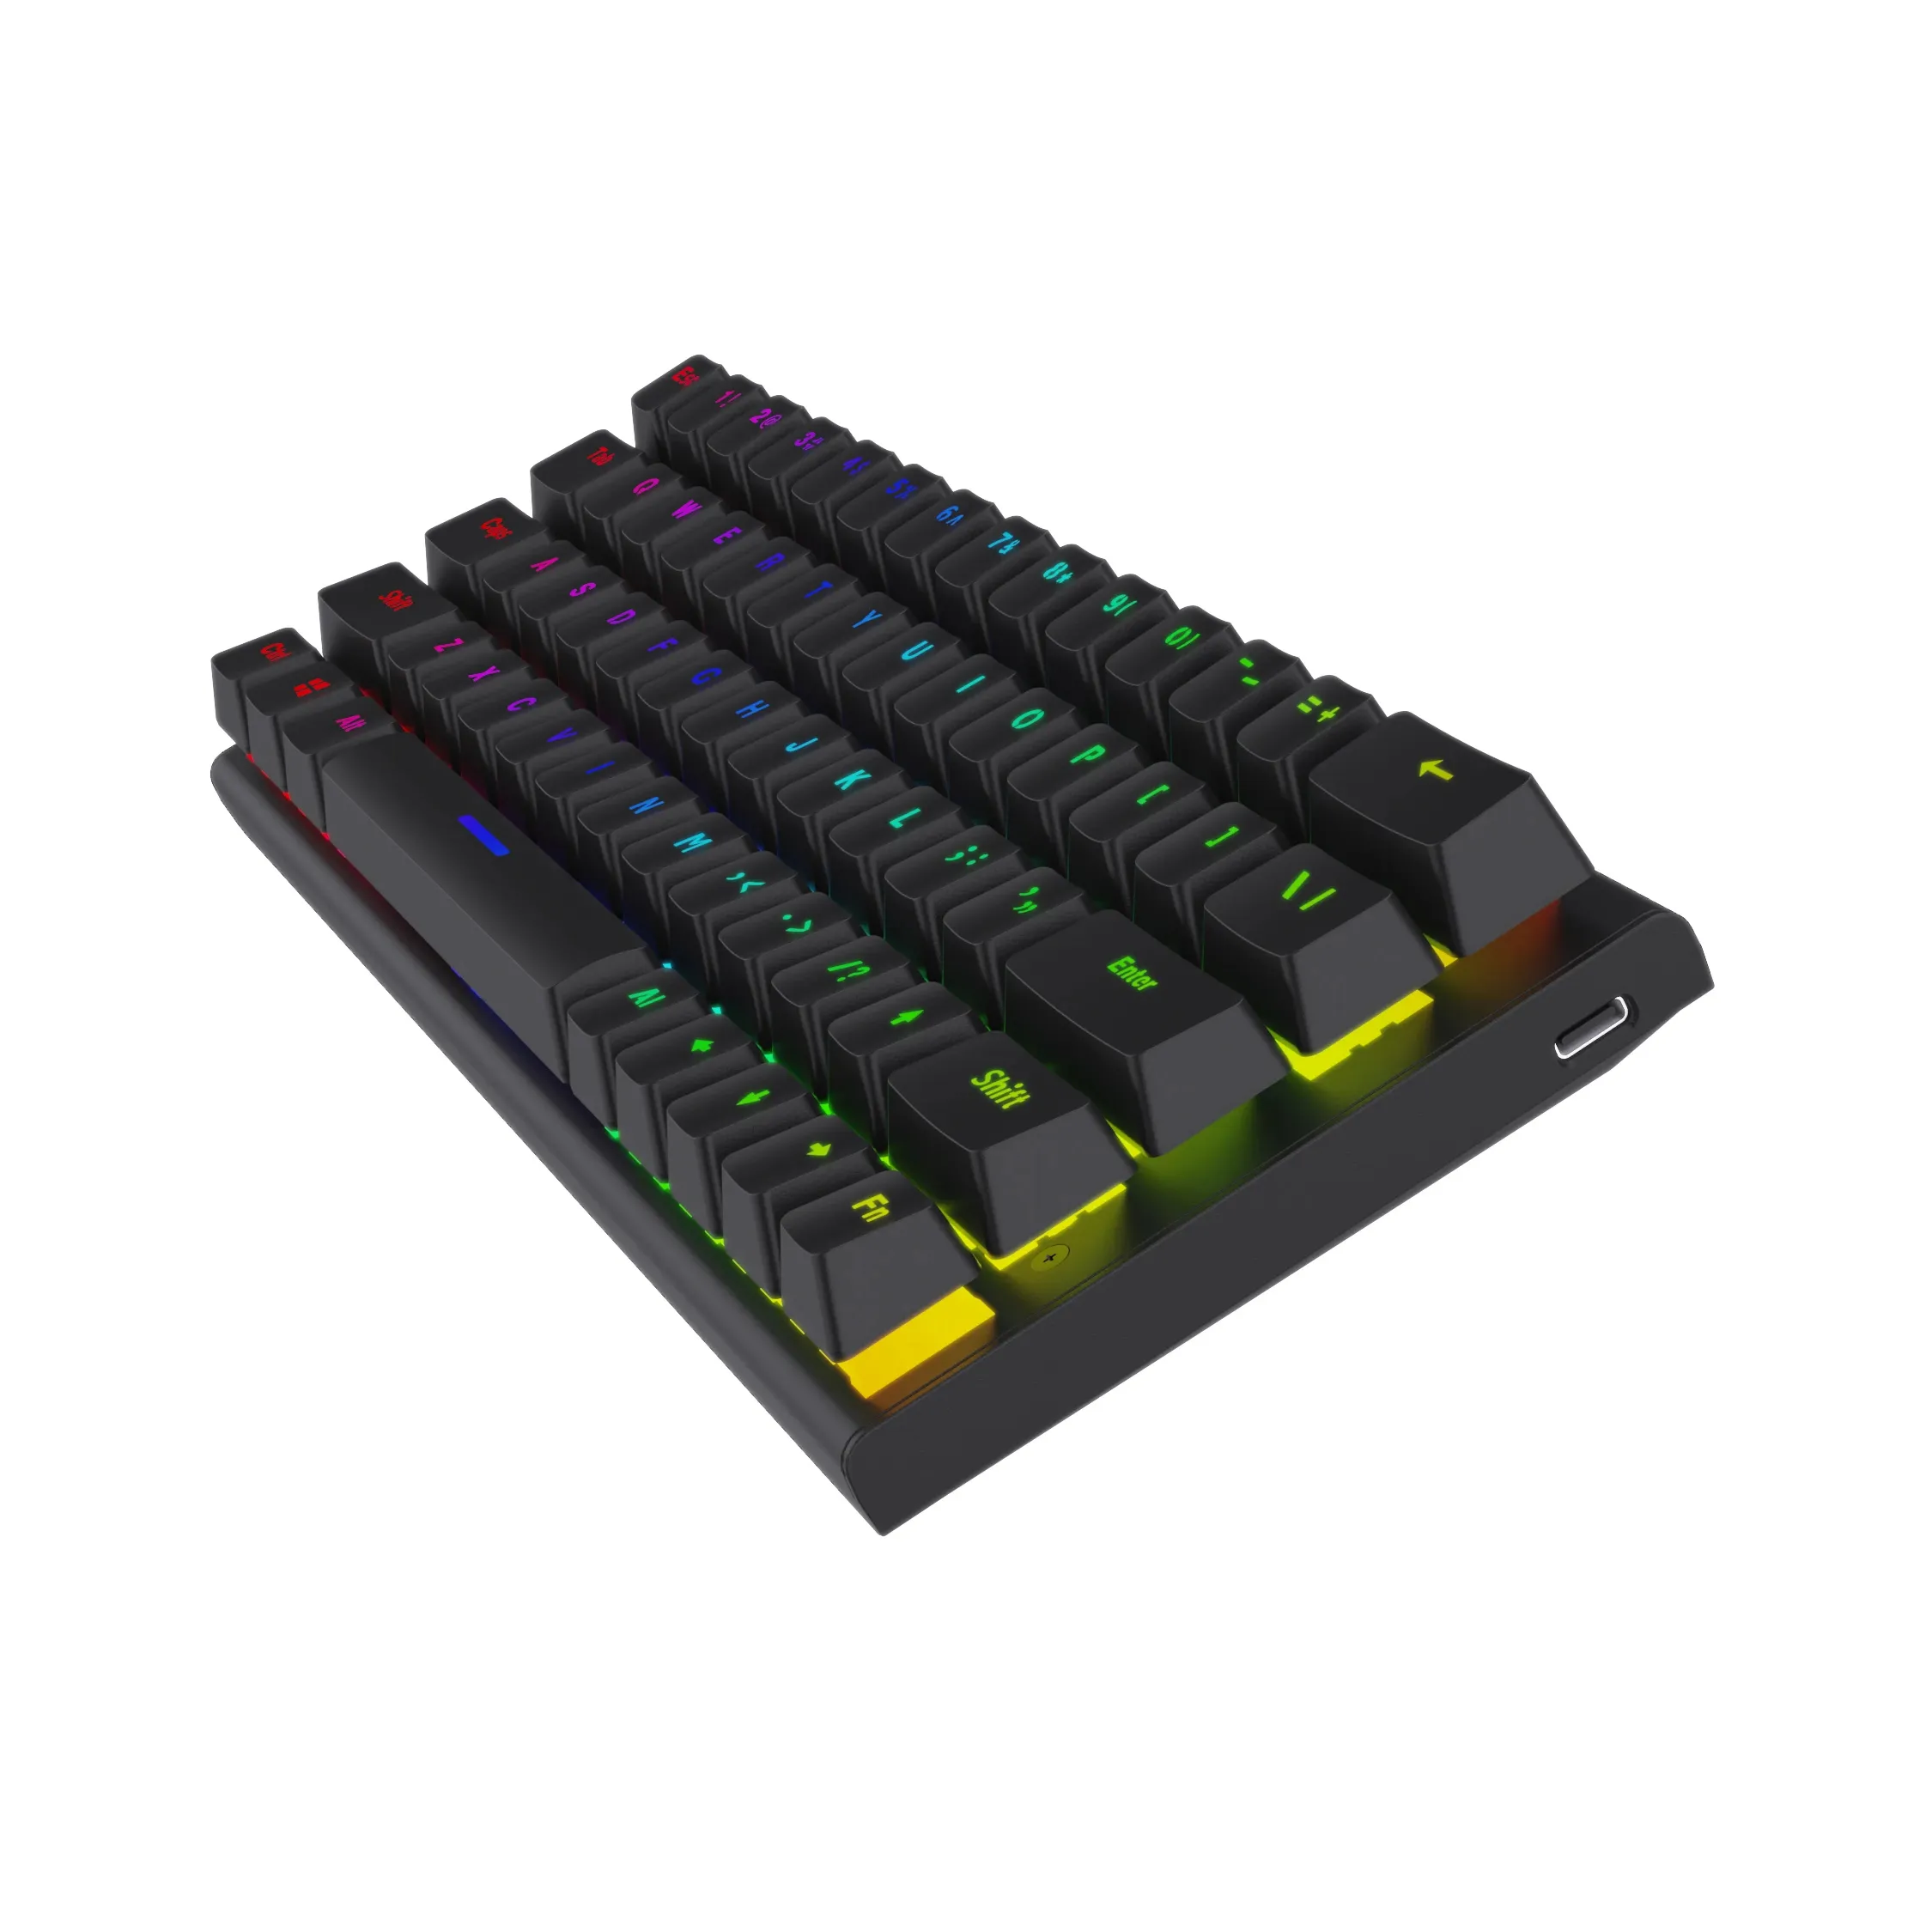 नया डिज़ाइन मिक्स कलर हाई कीबोर्ड गेमर टेक्लाडो सस्ता यूके रूसी स्पेनिश 60 प्रतिशत गेमिंग वायर्ड कंप्यूटर मैकेनिकल कीबोर्ड